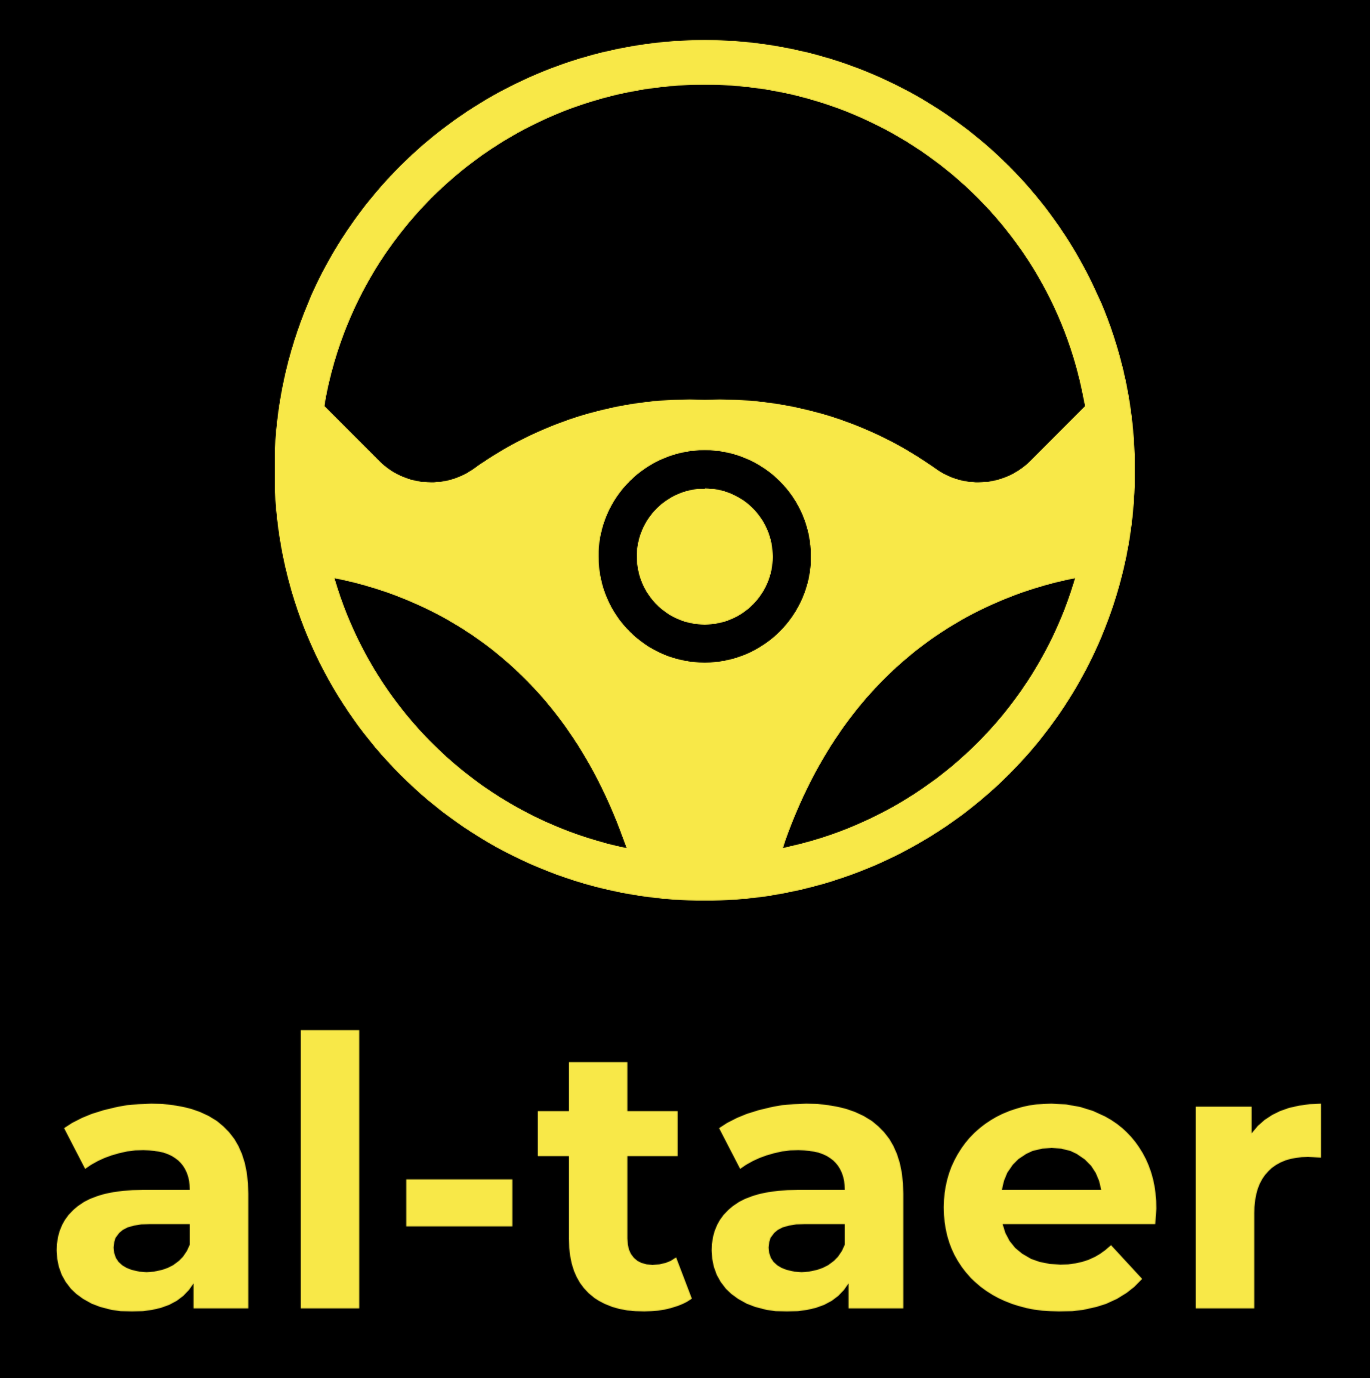 Al Taer